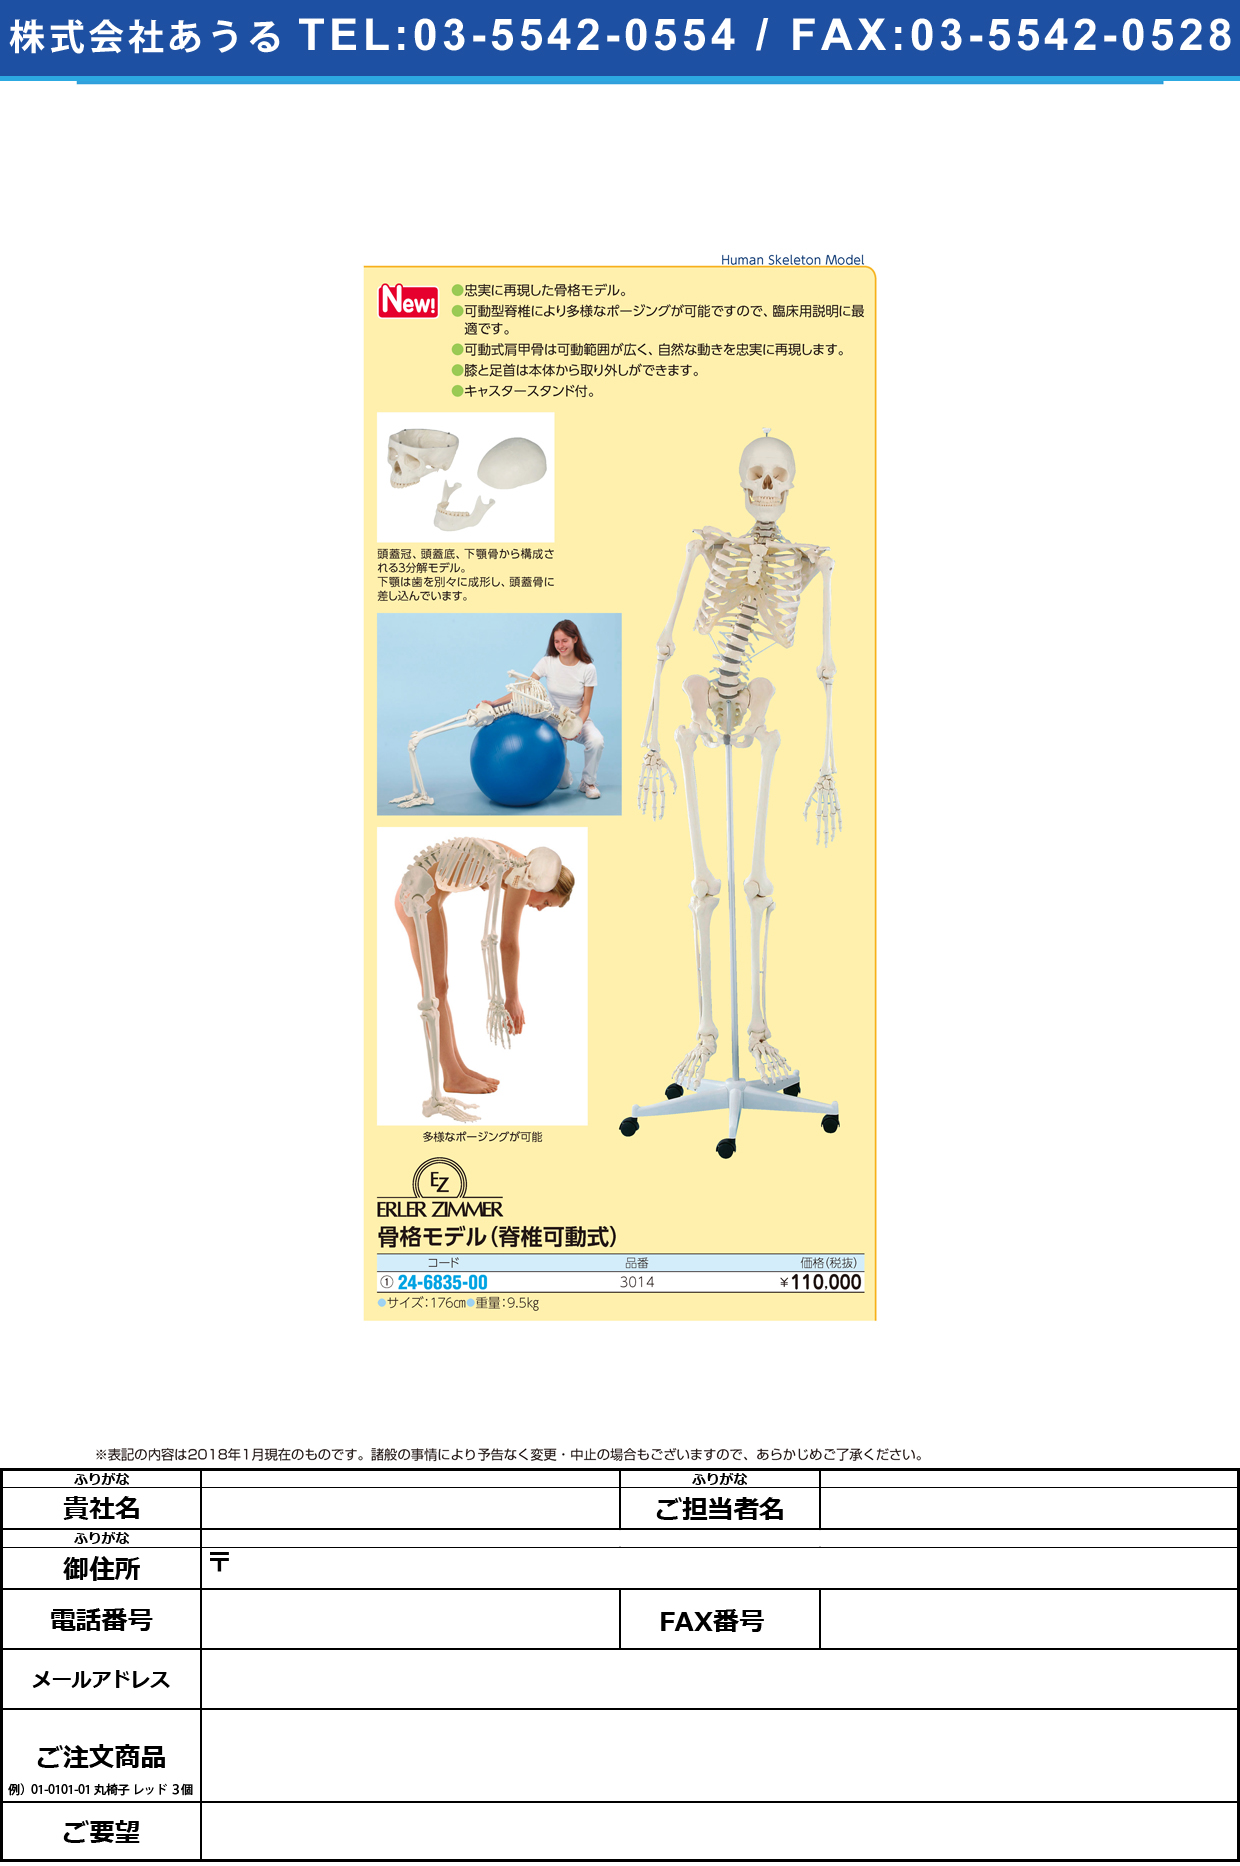 (24-6835-00)脊椎可動式骨格モデル 3014 ｾｷﾂｲｶﾄﾞｳｼｷｺｯｶｸﾓﾃﾞﾙ(エルラージーマー社)【1個単位】【2018年カタログ商品】